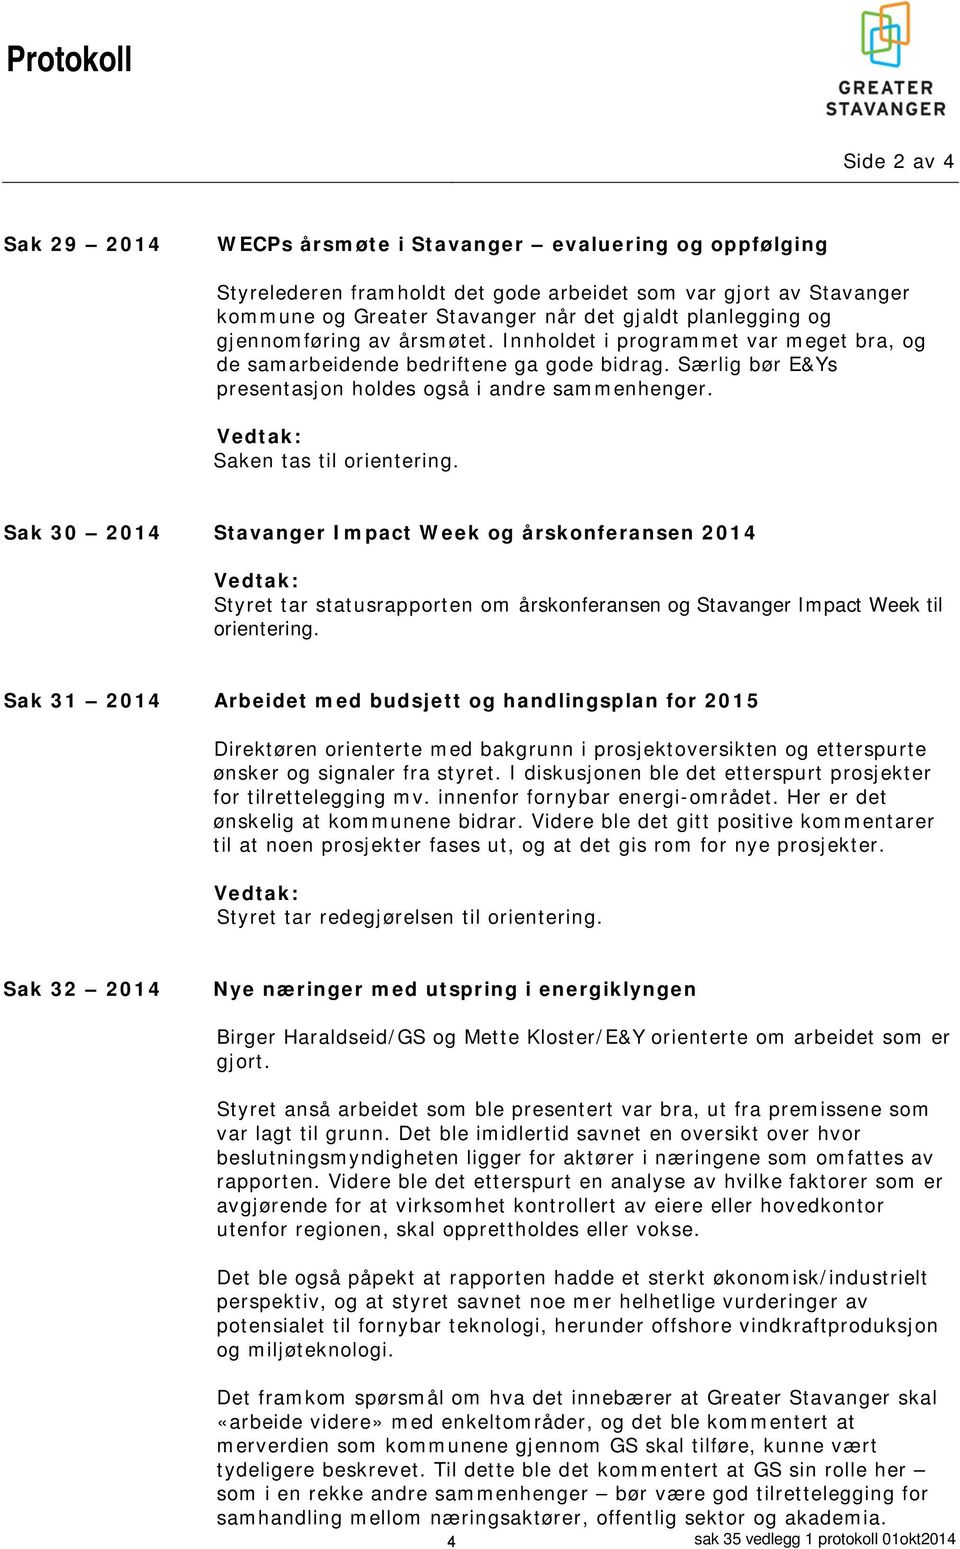 Vedtak: Saken tas til orientering. Sak 30 2014 Stavanger Impact Week og årskonferansen 2014 Vedtak: Styret tar statusrapporten om årskonferansen og Stavanger Impact Week til orientering.